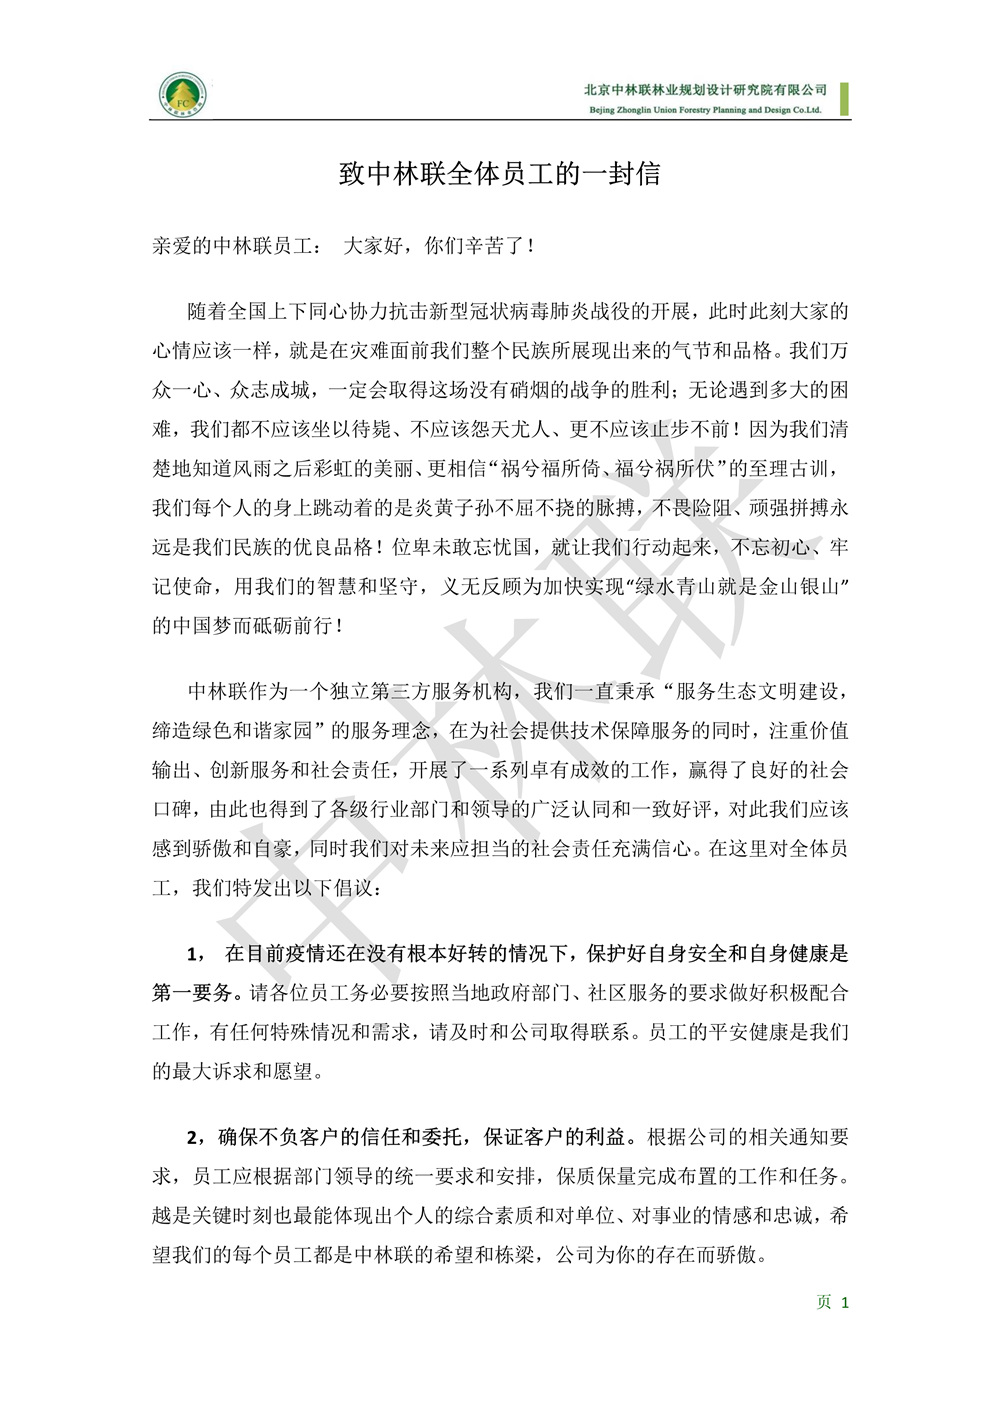 致中林联全体员工的一封信2020210--对外公众号版(1)_1.jpg